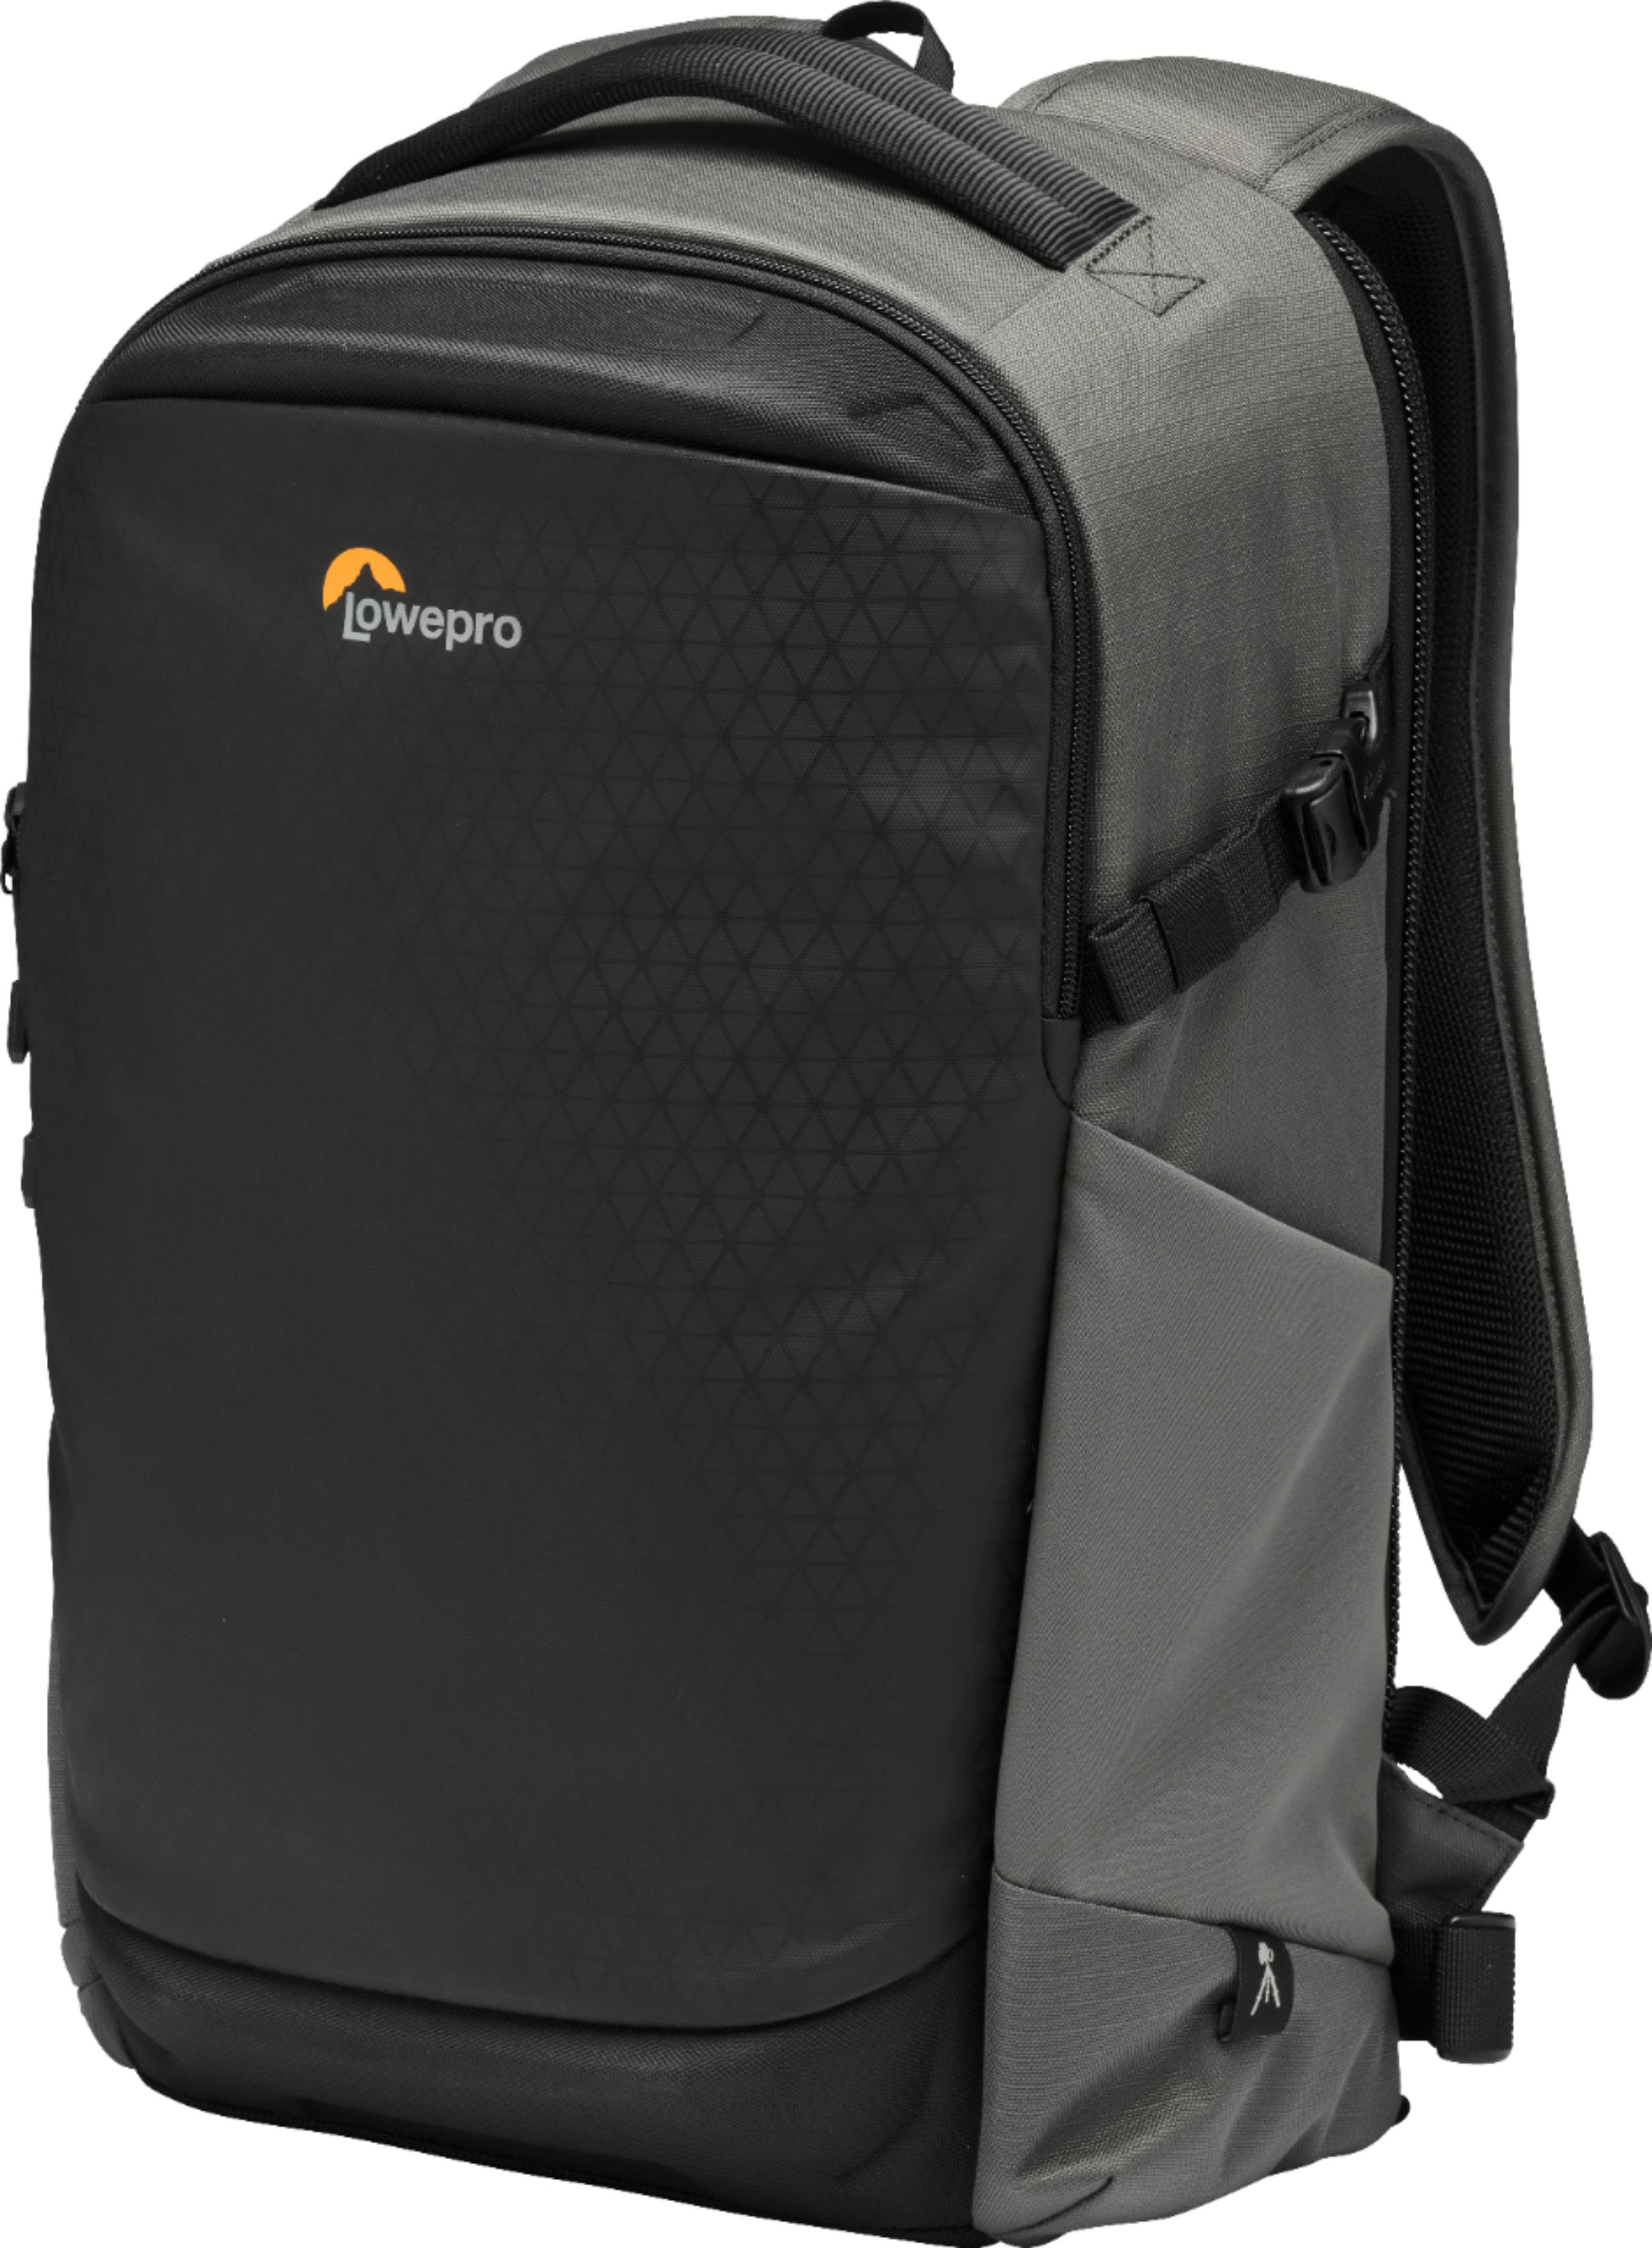 Angle View: Lowepro - Flipside BP 300 AW III Backpack - Charcoal